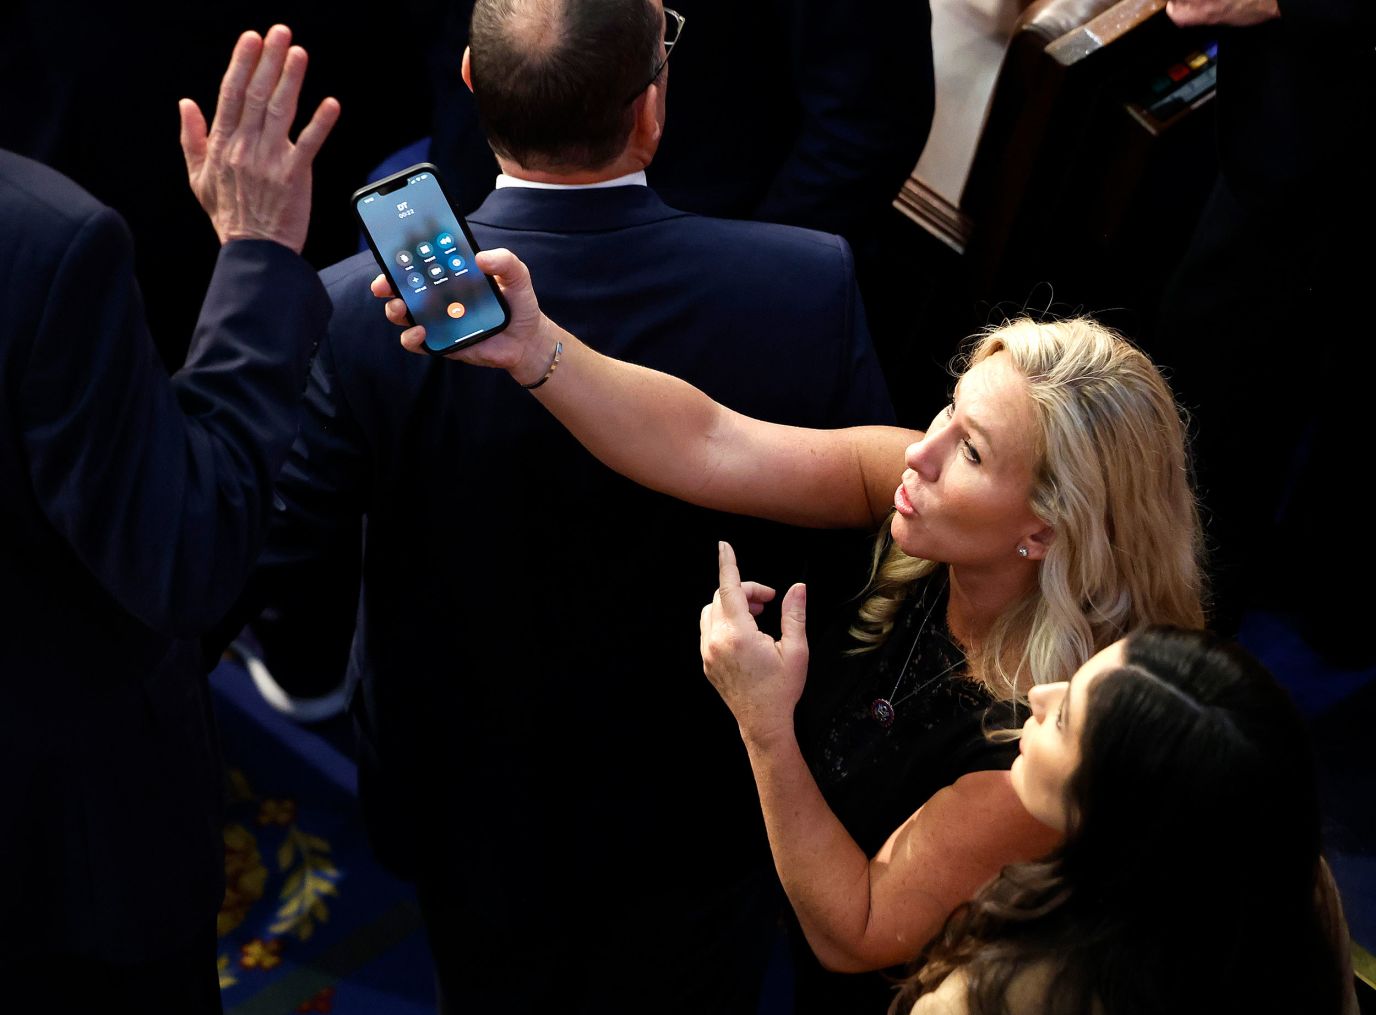 النائبة الأمريكية مارجوري تايلور جرين ، وهي جمهورية من جورجيا ، تحمل هاتفًا بالأحرف الأولى "DT" على الشاشة ليلة الجمعة.  وأكد المتحدث باسمها أنه هاتف الرئيس السابق دونالد ترامب.